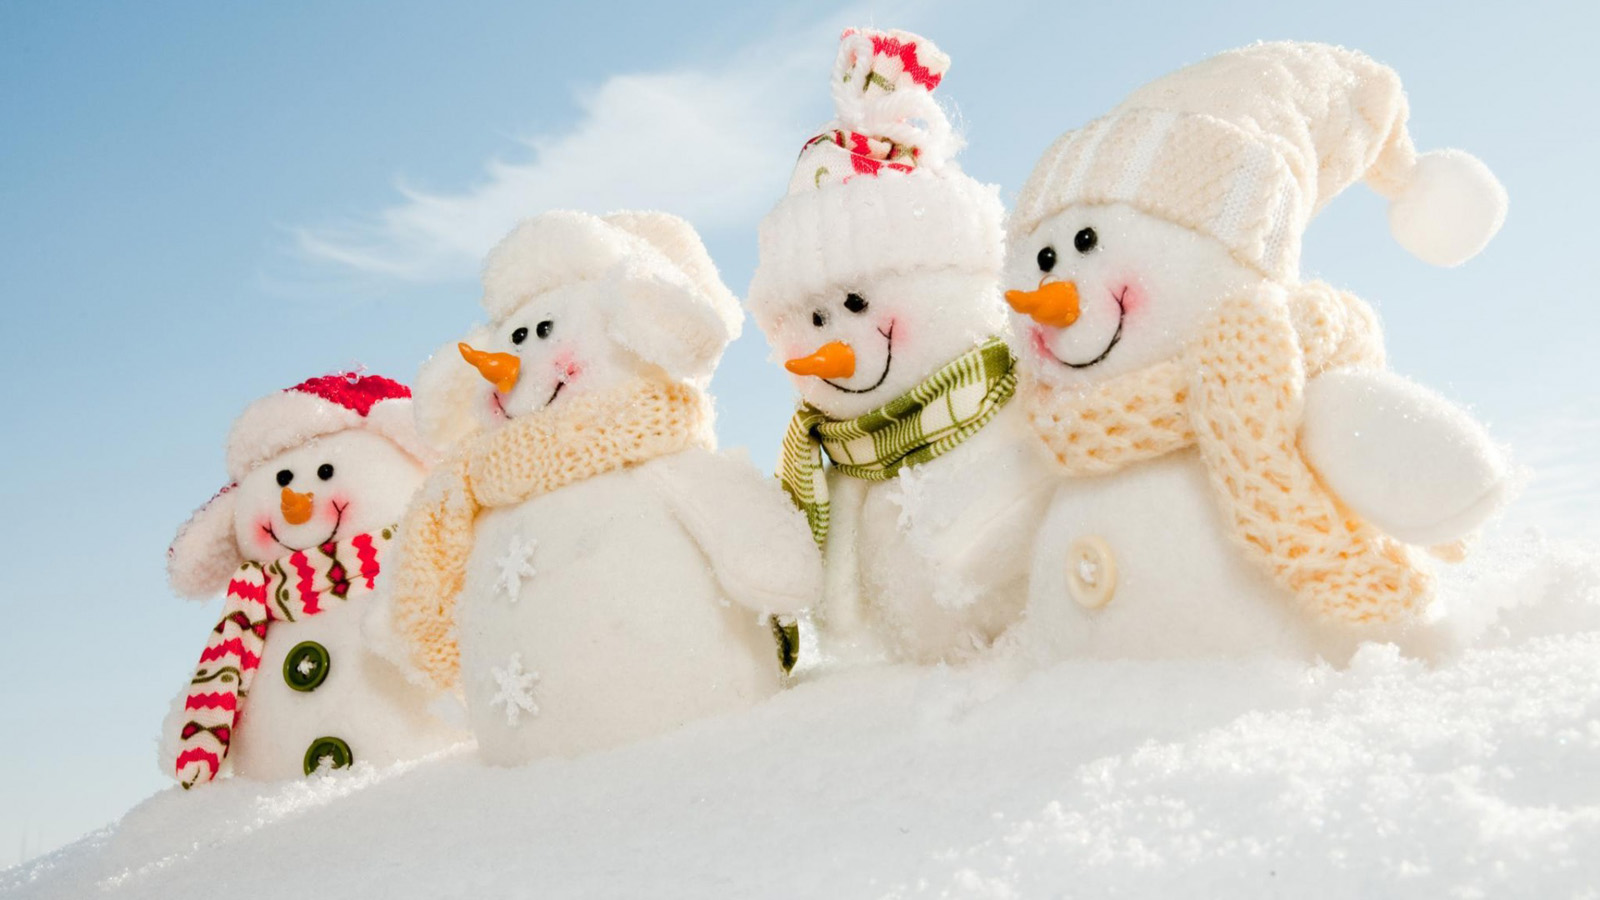 冬季 圣诞节 小雪人 玩具壁纸(小清新静态壁纸) - 静态壁纸下载 - 元气壁纸